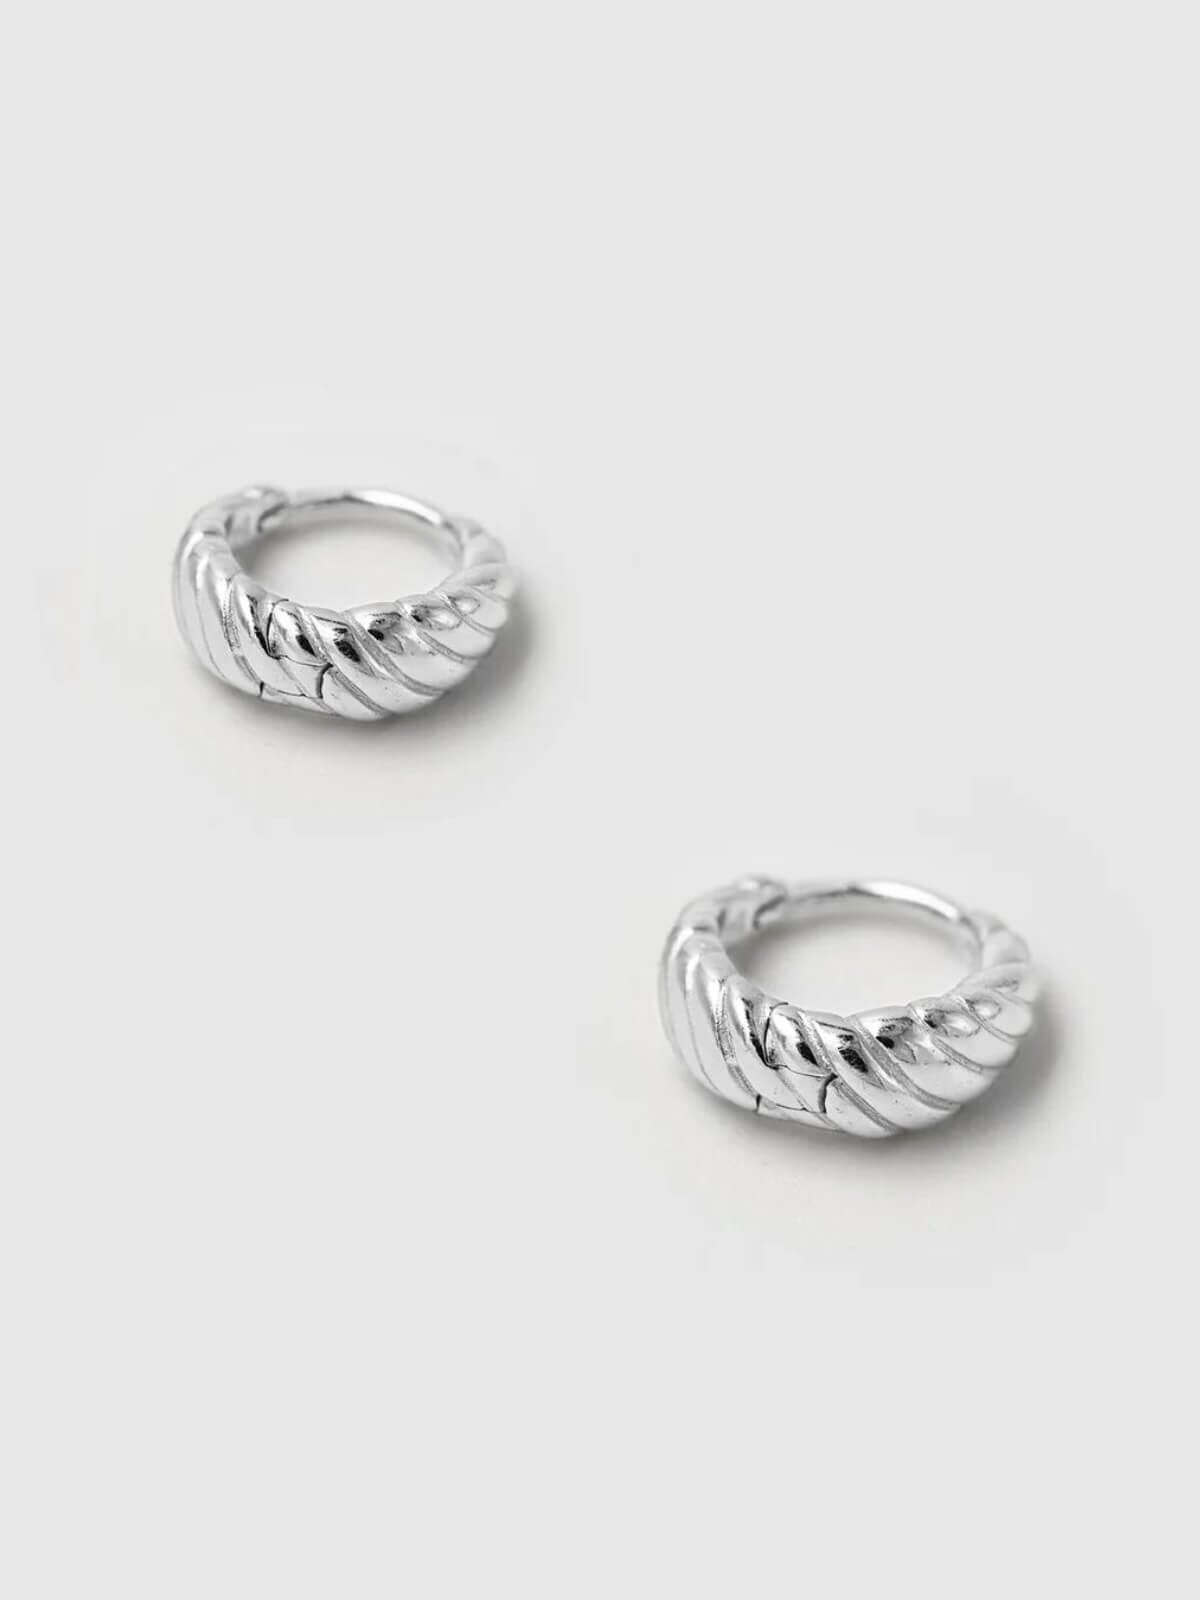 925 Olar Sleeper Earrings - Silver Earrings Brie Leon 